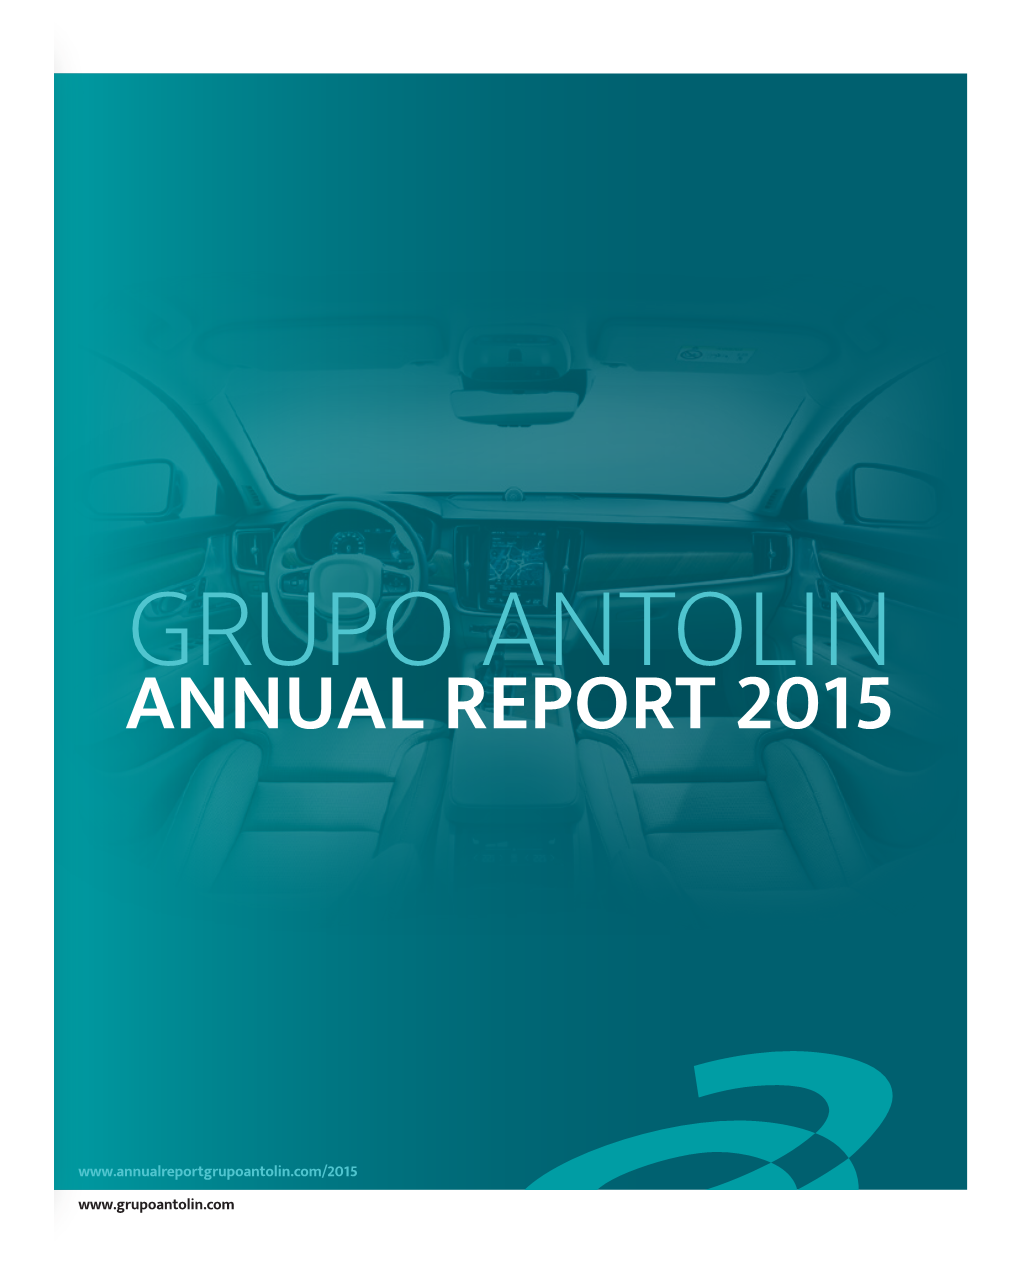 Grupo Antolin 2015 Annual Report